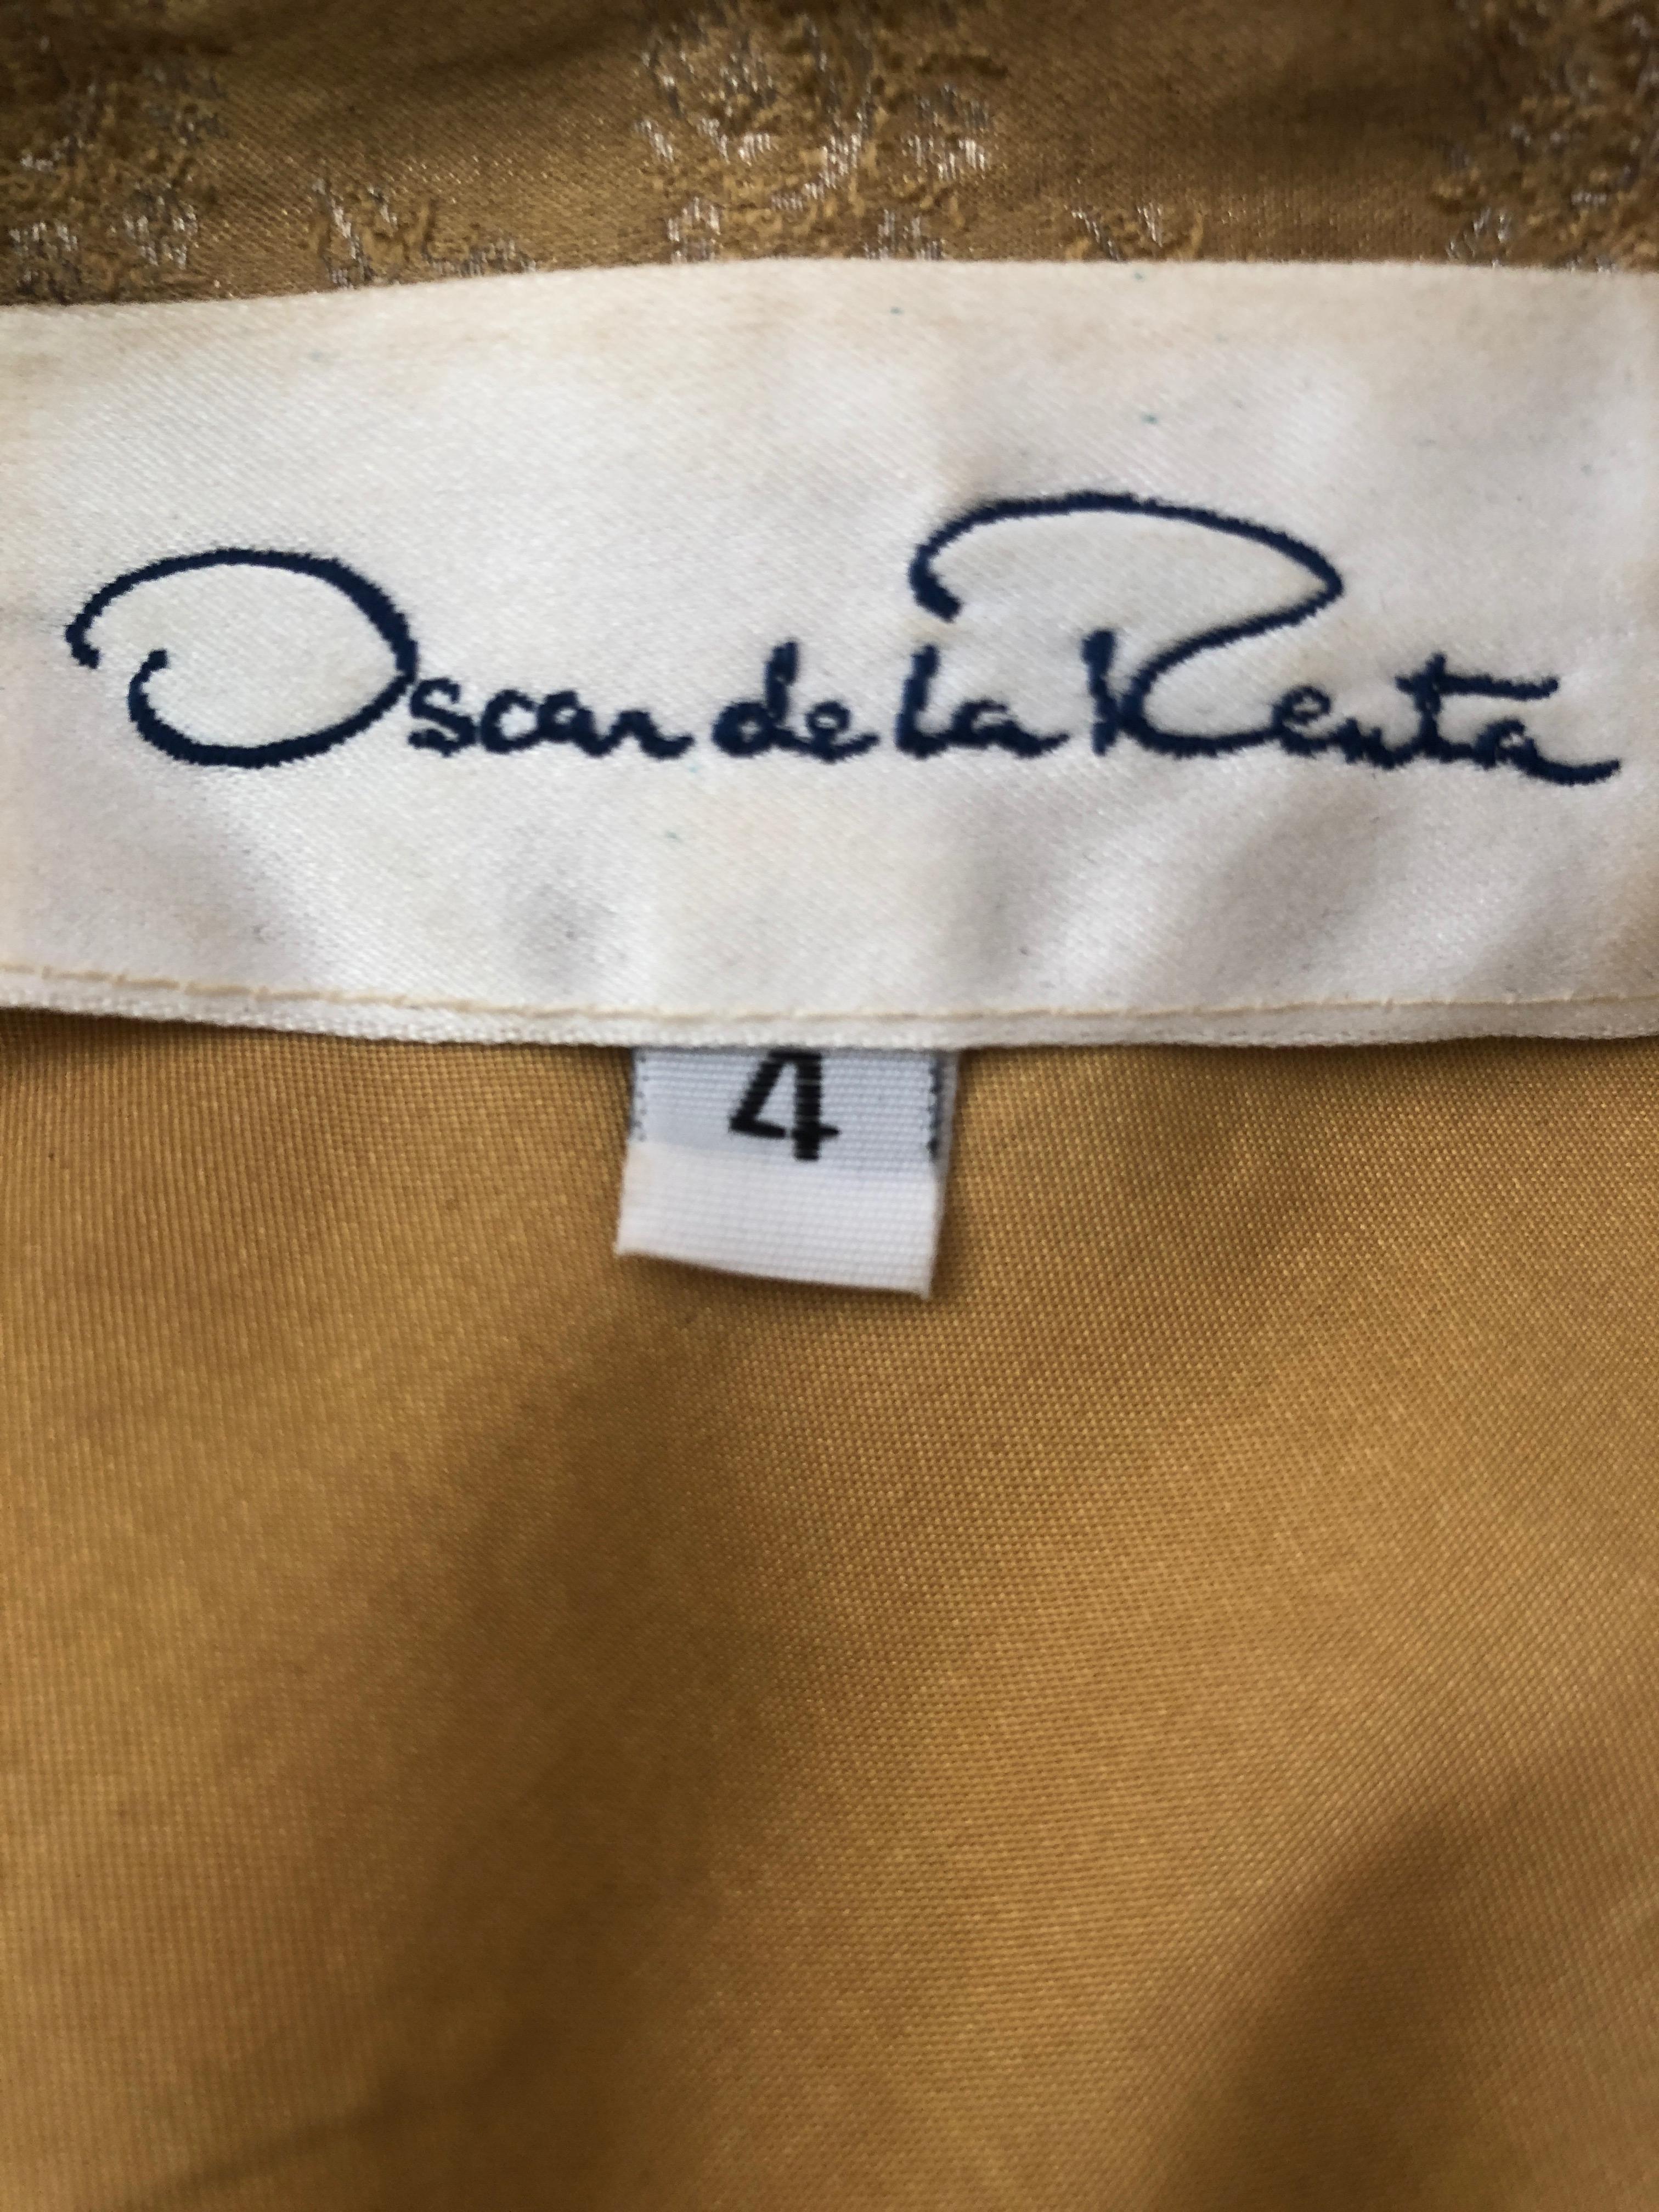 Oscar de la Renta Vintage Golden Brocade Dress as worn by CZ Guest to CFDA Award For Sale 7